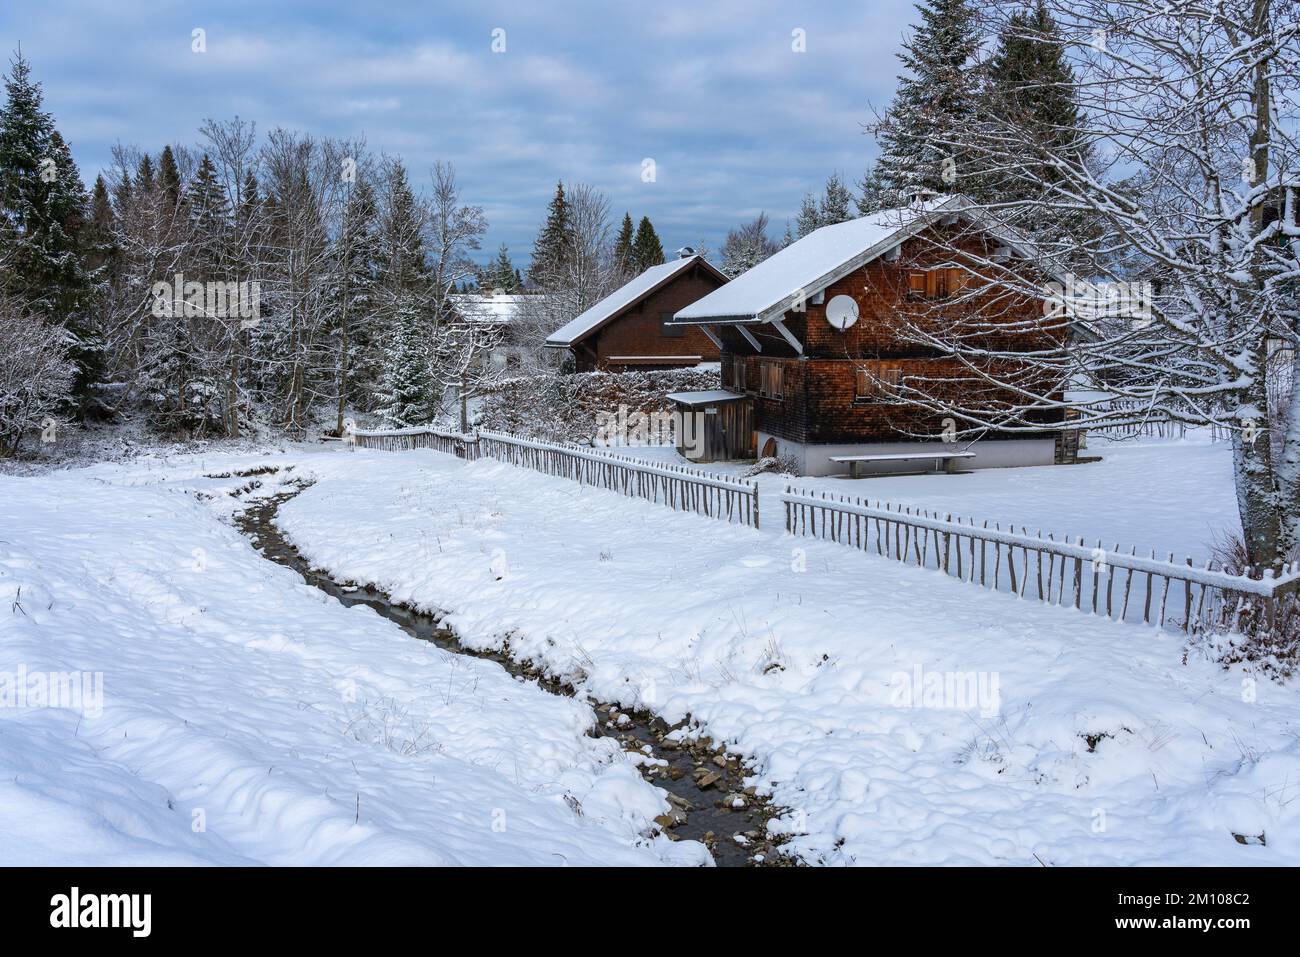 Holzhaus, Ferienhaus am Waldrand auf dem Hügel im ersten Schnee, verschneite Landschaft mit weißen Wiesen und Bäumen. Advent und Weihnachtszeit Ferien Stock Photo